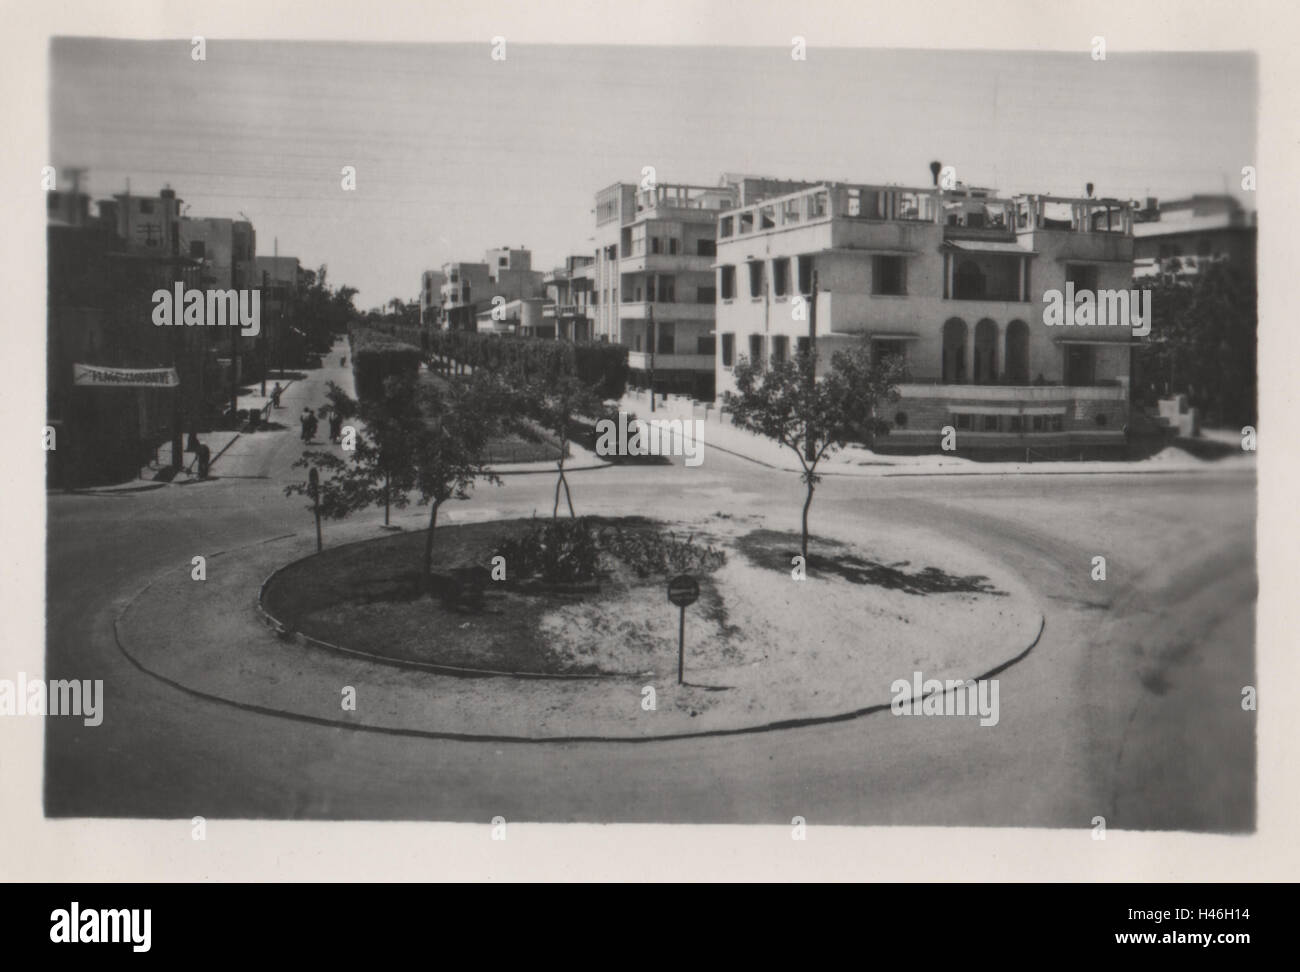 Boulevard Sultan Hussein in Ismailia Egitto con gli edifici della città sullo sfondo. Fotografato nel 1952 Foto Stock